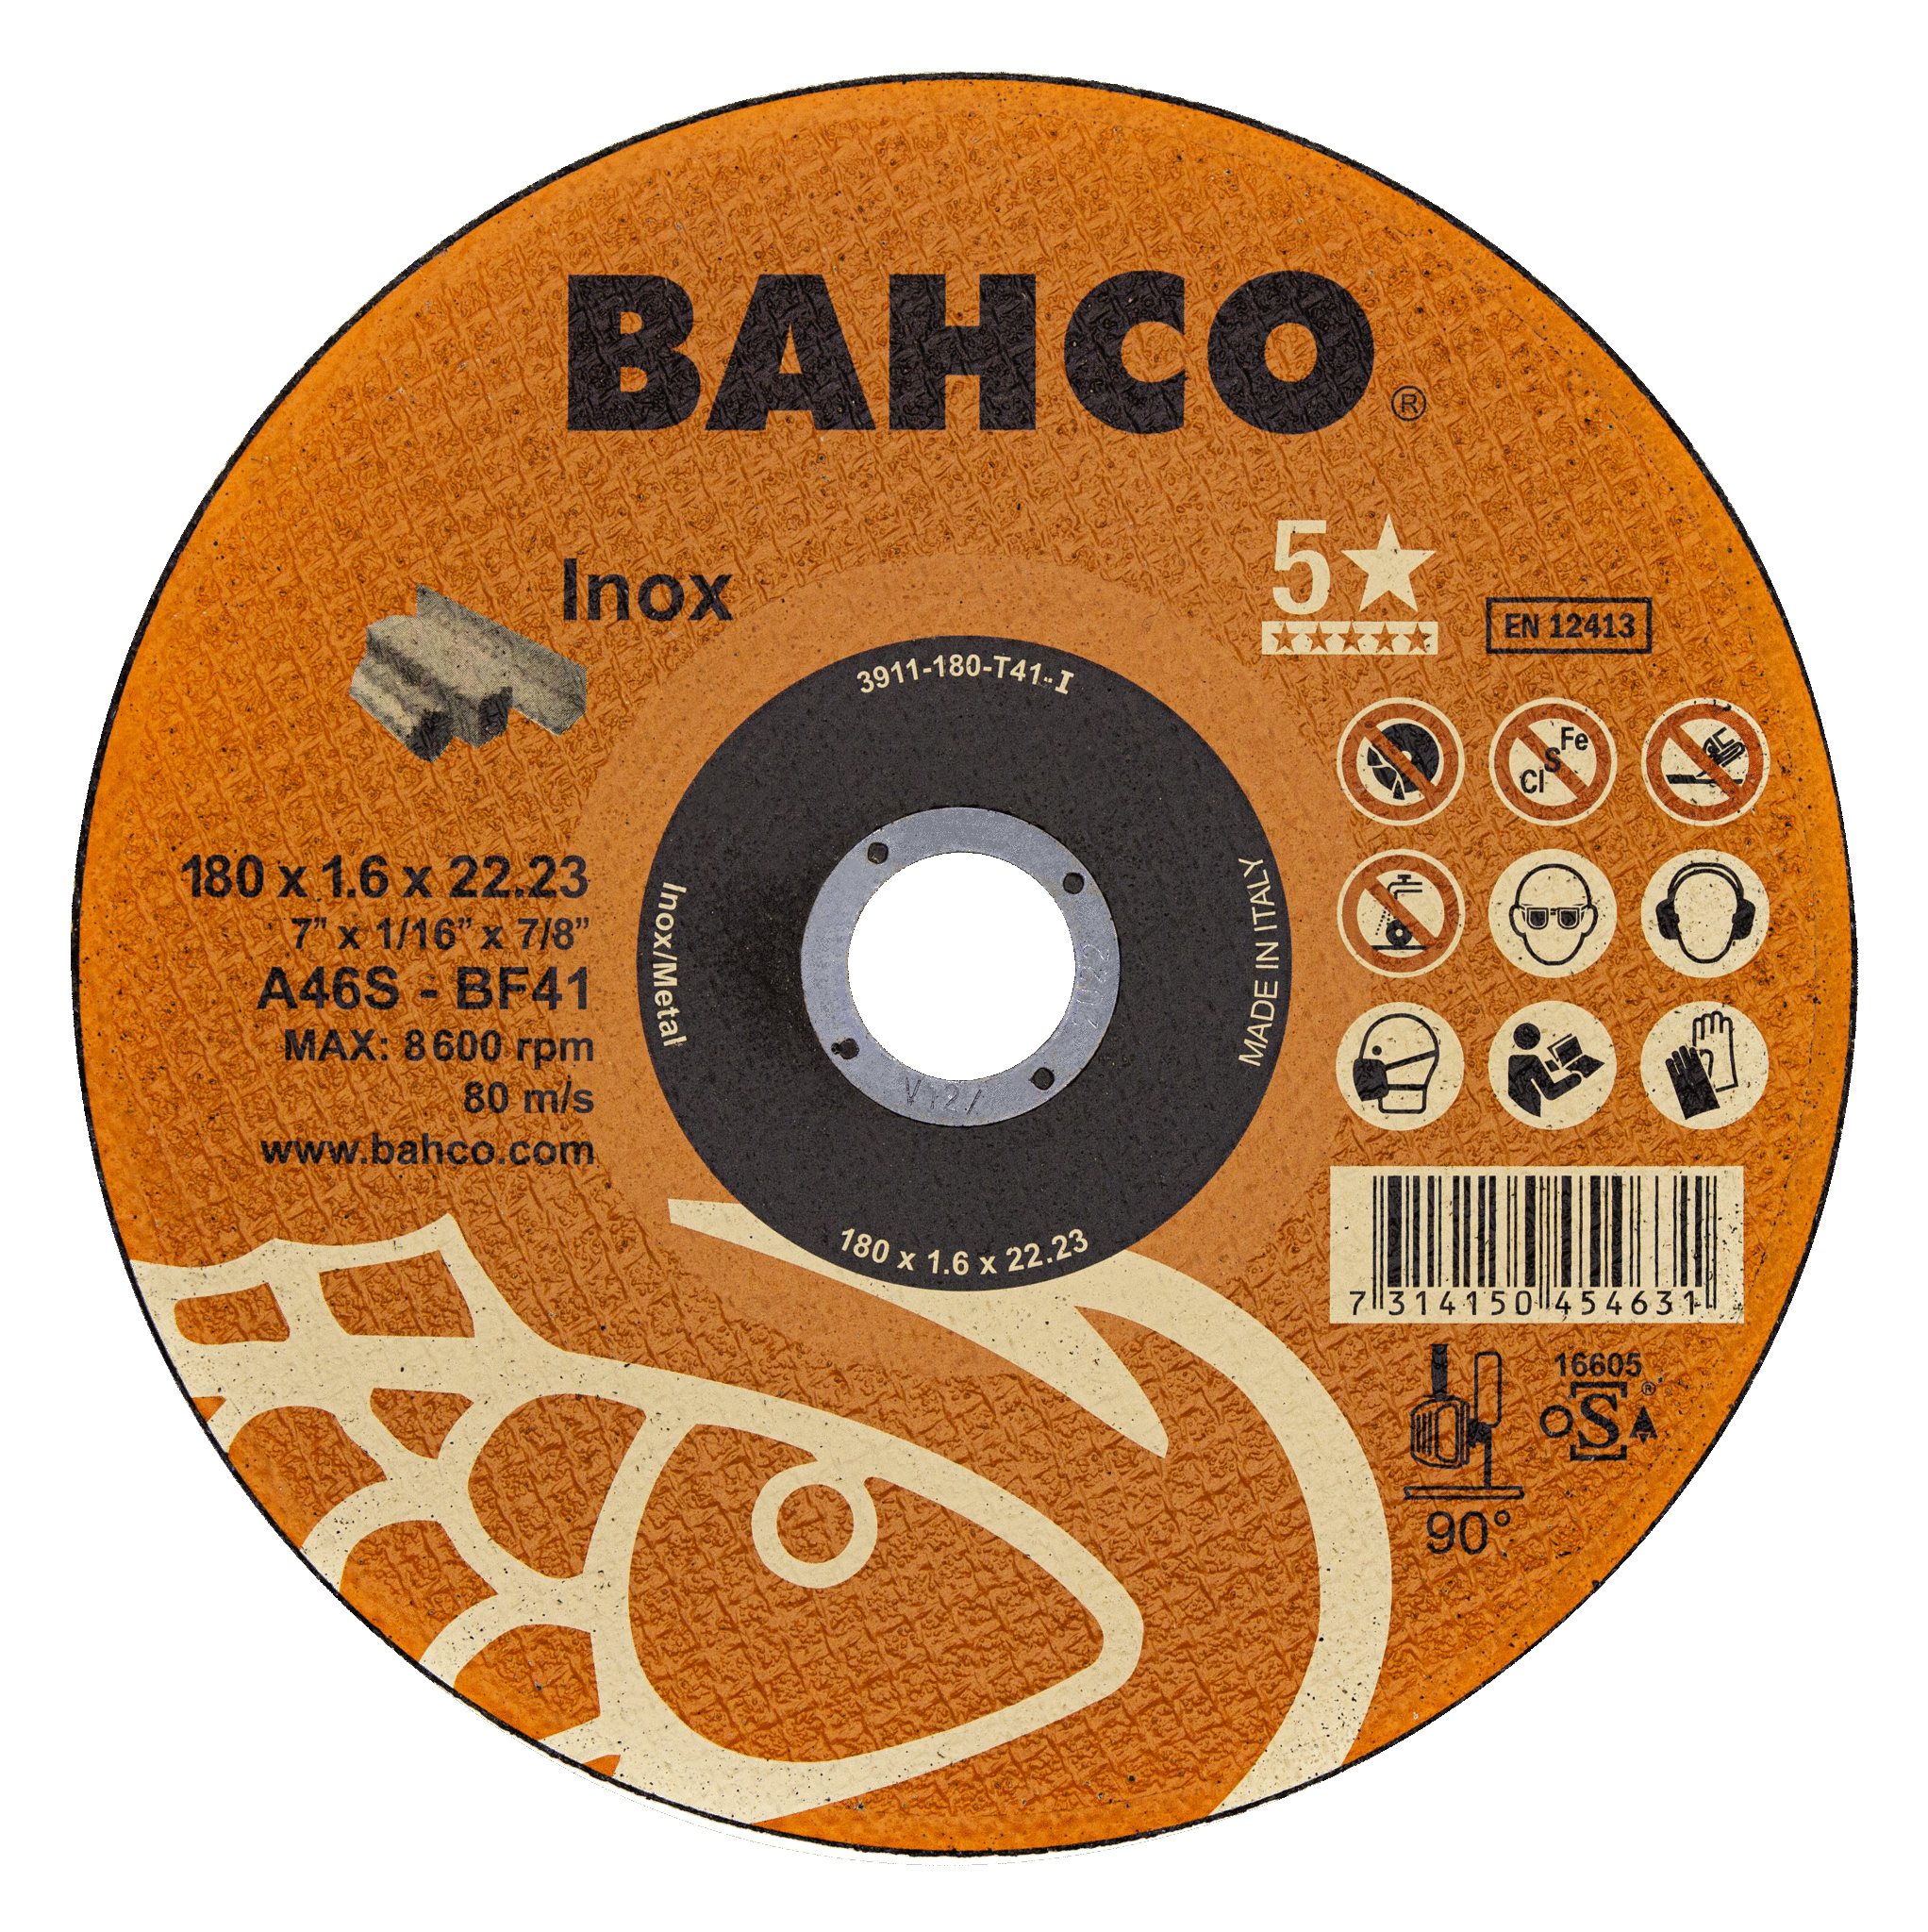 картинка Высокопроизводительные дисковые пилы для нержавеющей стали 230 x 1.9 x 22.23mm BAHCO 3911-230-T41-I от магазина "Элит-инструмент"